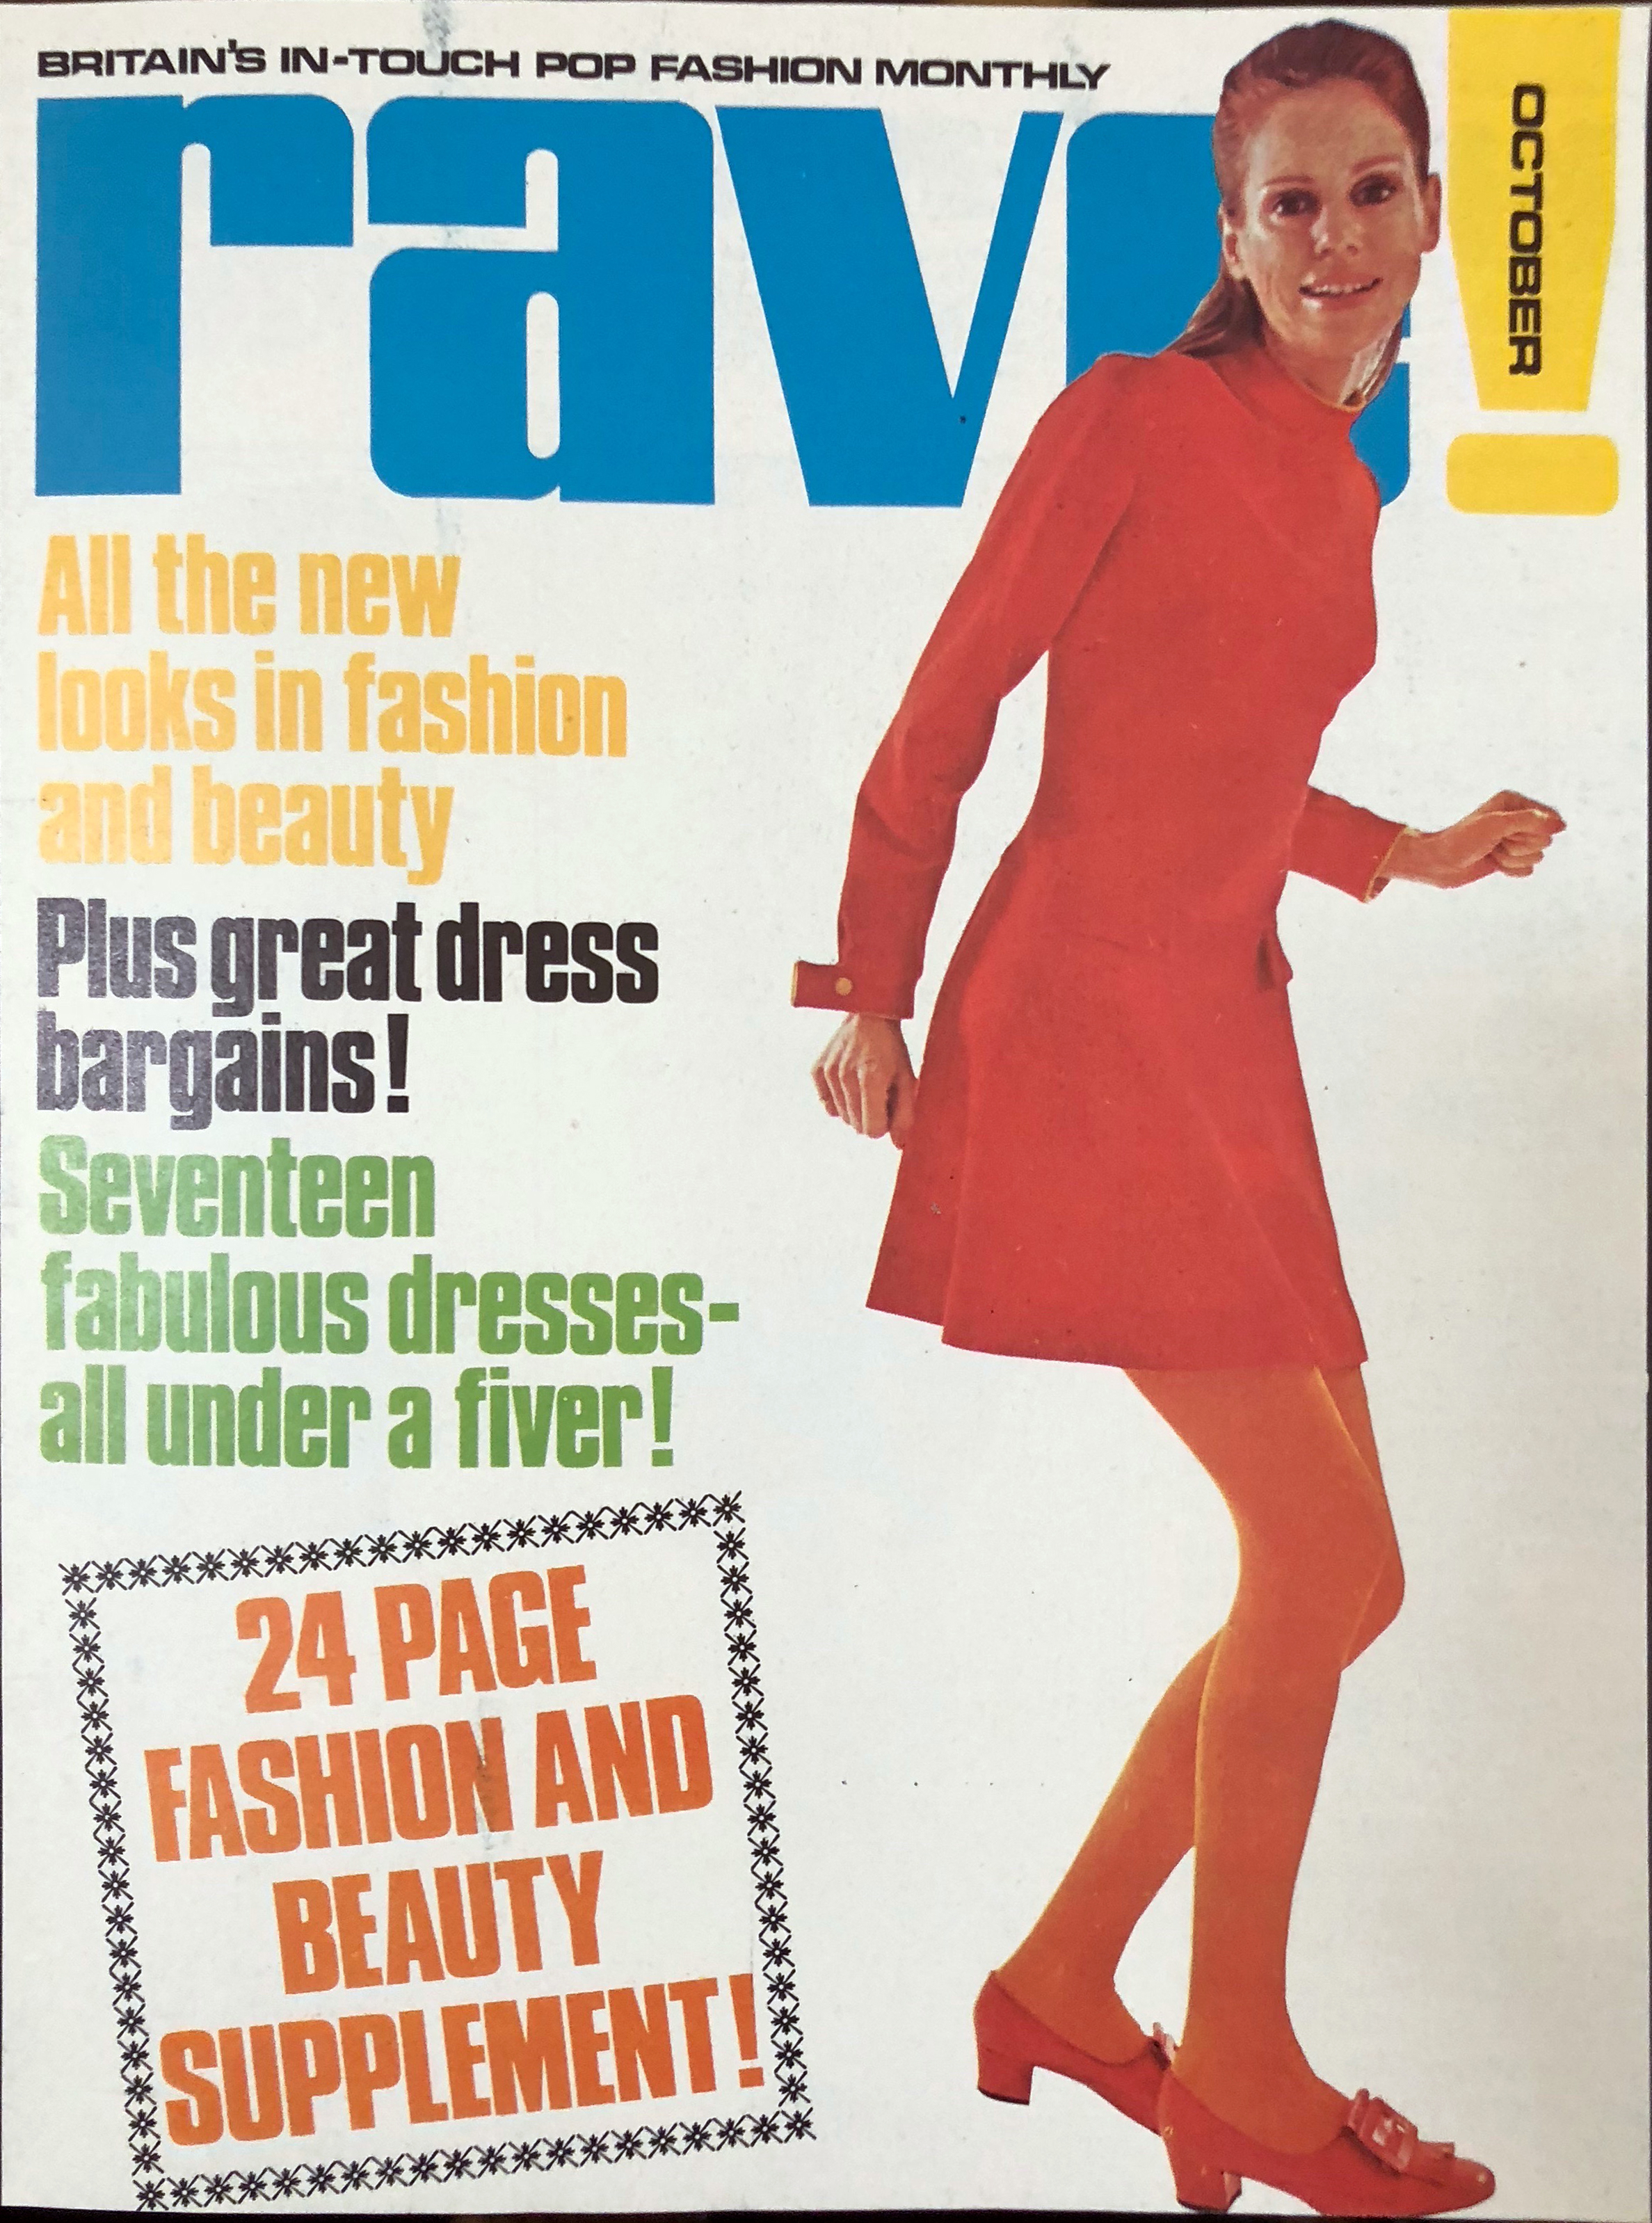 Rave magazine fashion